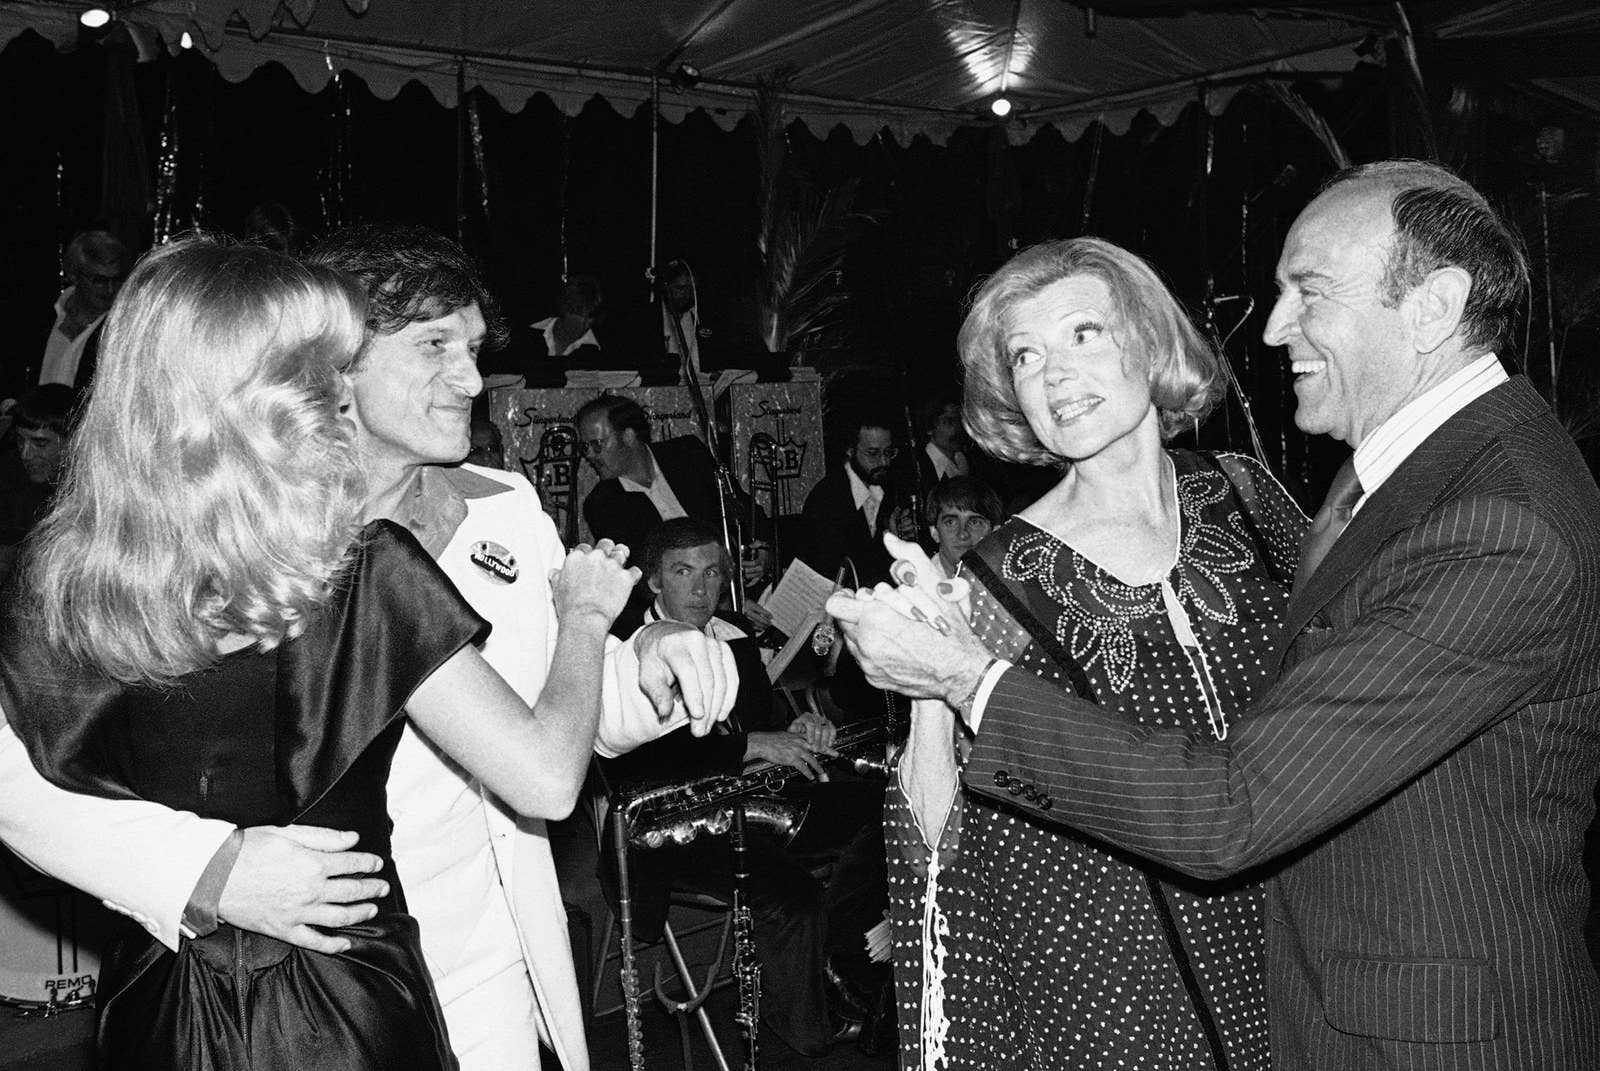 Hefner baila con la playmate Sandre Theodore, junto con la actriz Rita Hayworth y su coreógrafo, Hermes Pan, durante una fiesta de recaudación de fondos para salvar el letrero de "Hollywood" en 1978.